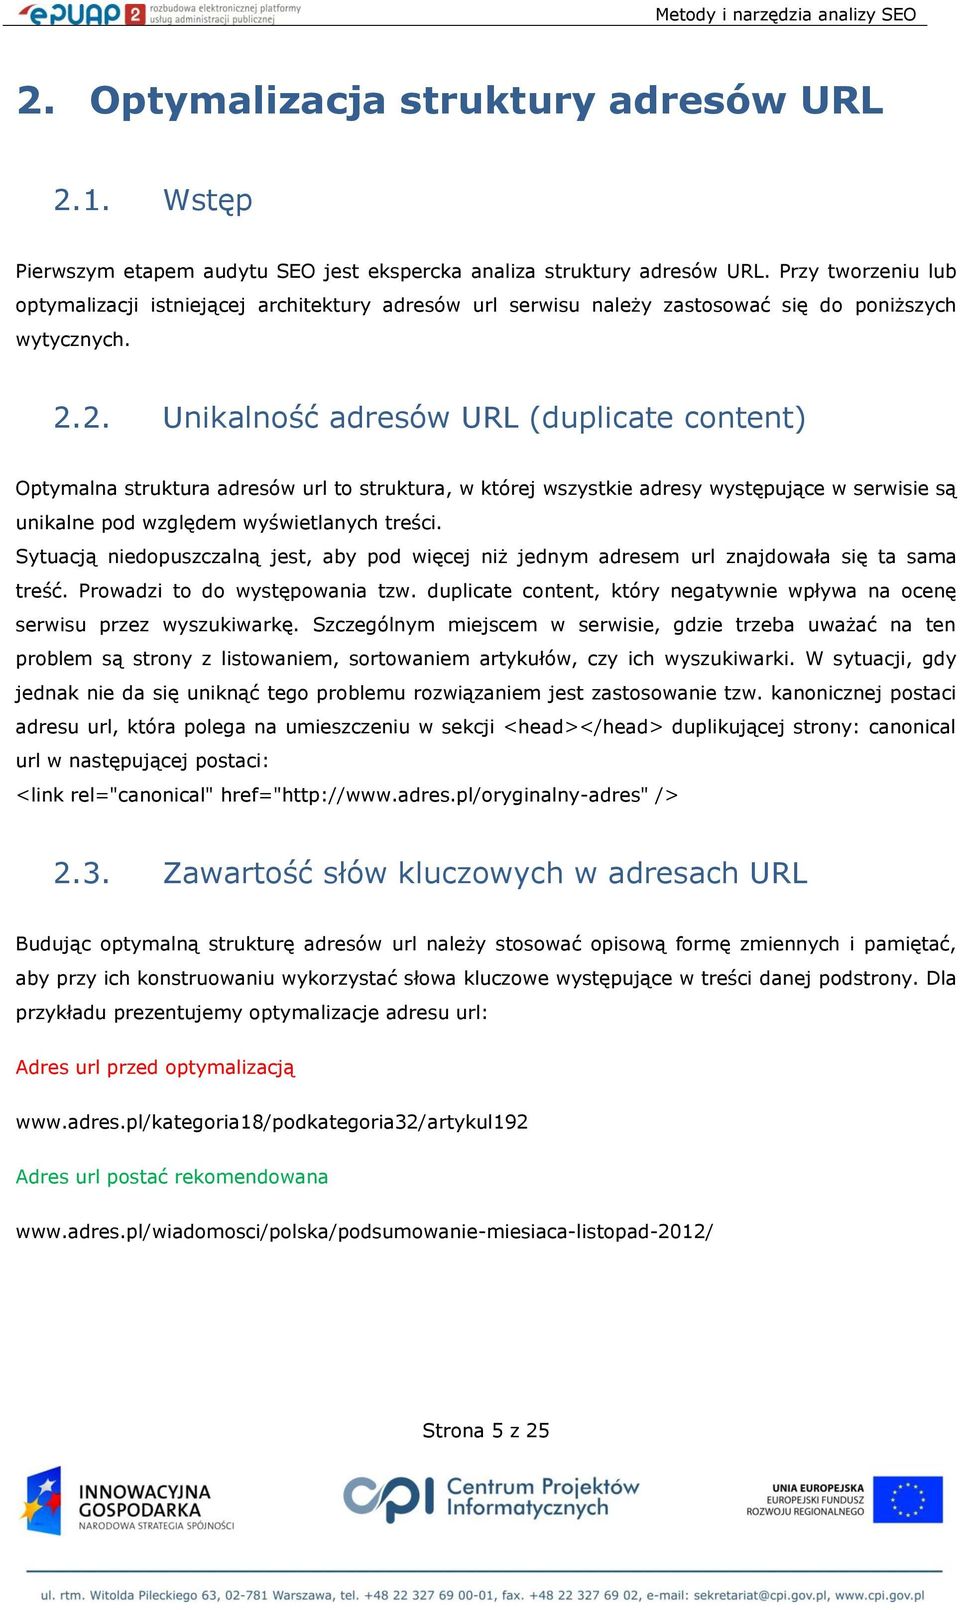 2. Unikalność adresów URL (duplicate content) Optymalna struktura adresów url to struktura, w której wszystkie adresy występujące w serwisie są unikalne pod względem wyświetlanych treści.